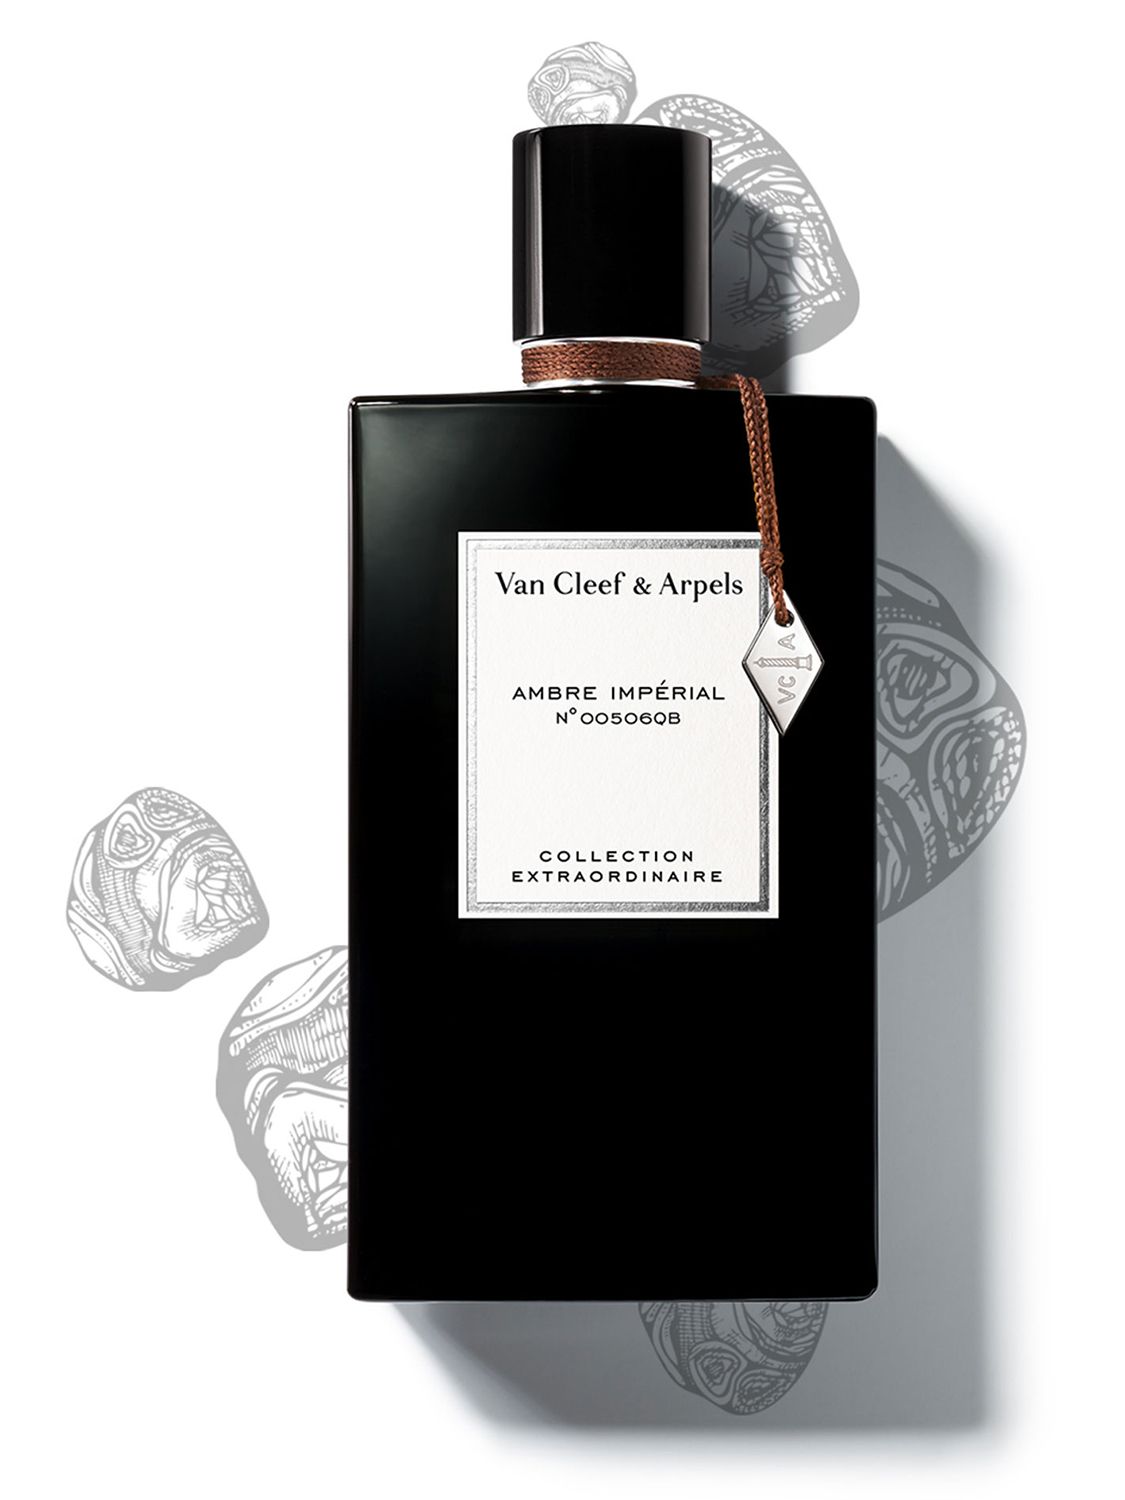 Van Cleef & Arpels Collection Extraordinaire Ambre Impérial Eau de Parfum, 75ml 2